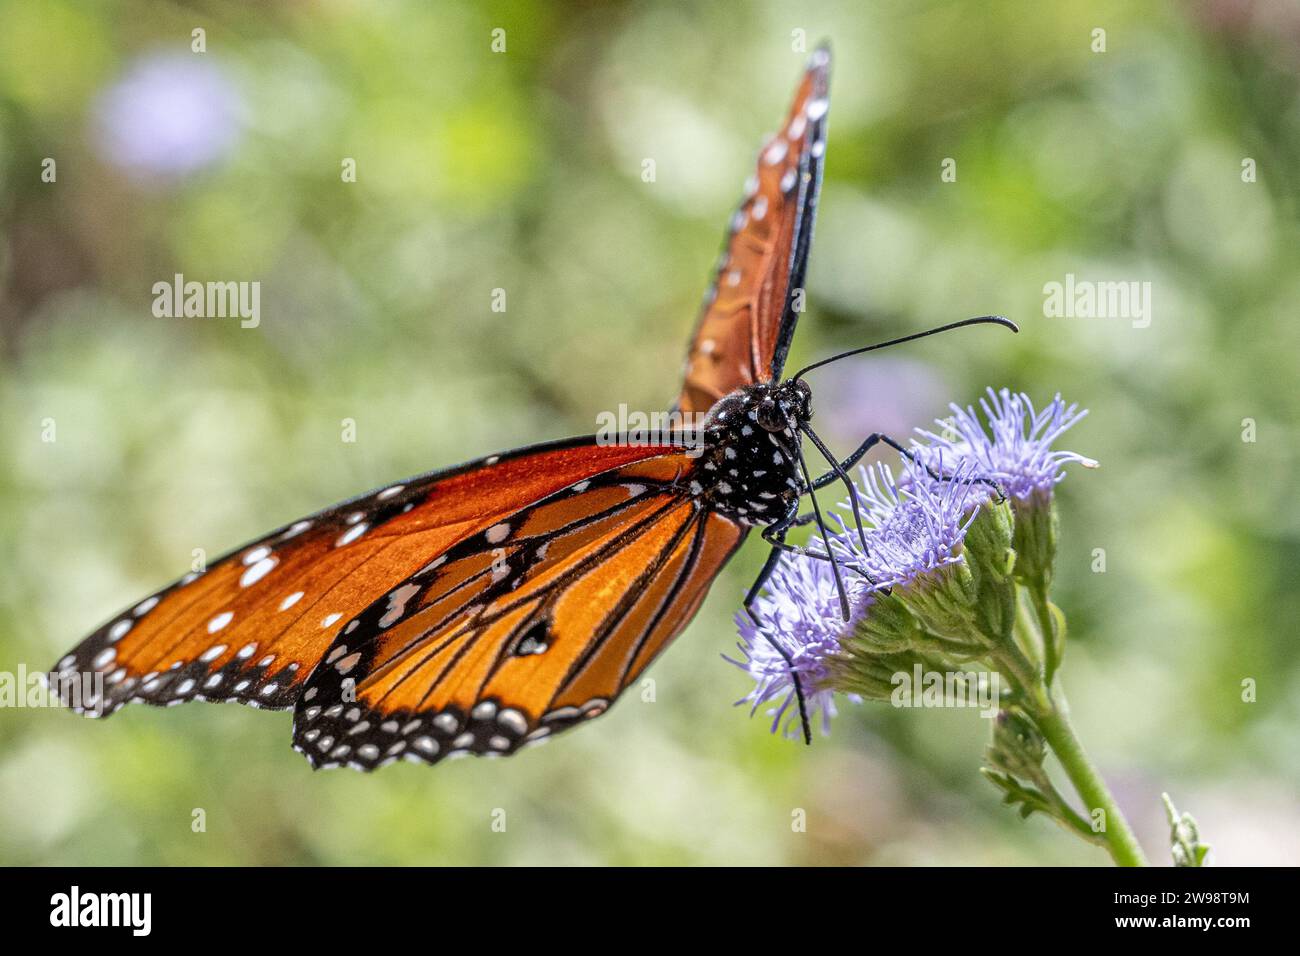 Reine papillon Danaus gilippus se nourrissant de nectar de fleur de jardin - Müllerian co-imite orange monarque aka mimique insecte - proboscis détail d'aile étendue Banque D'Images